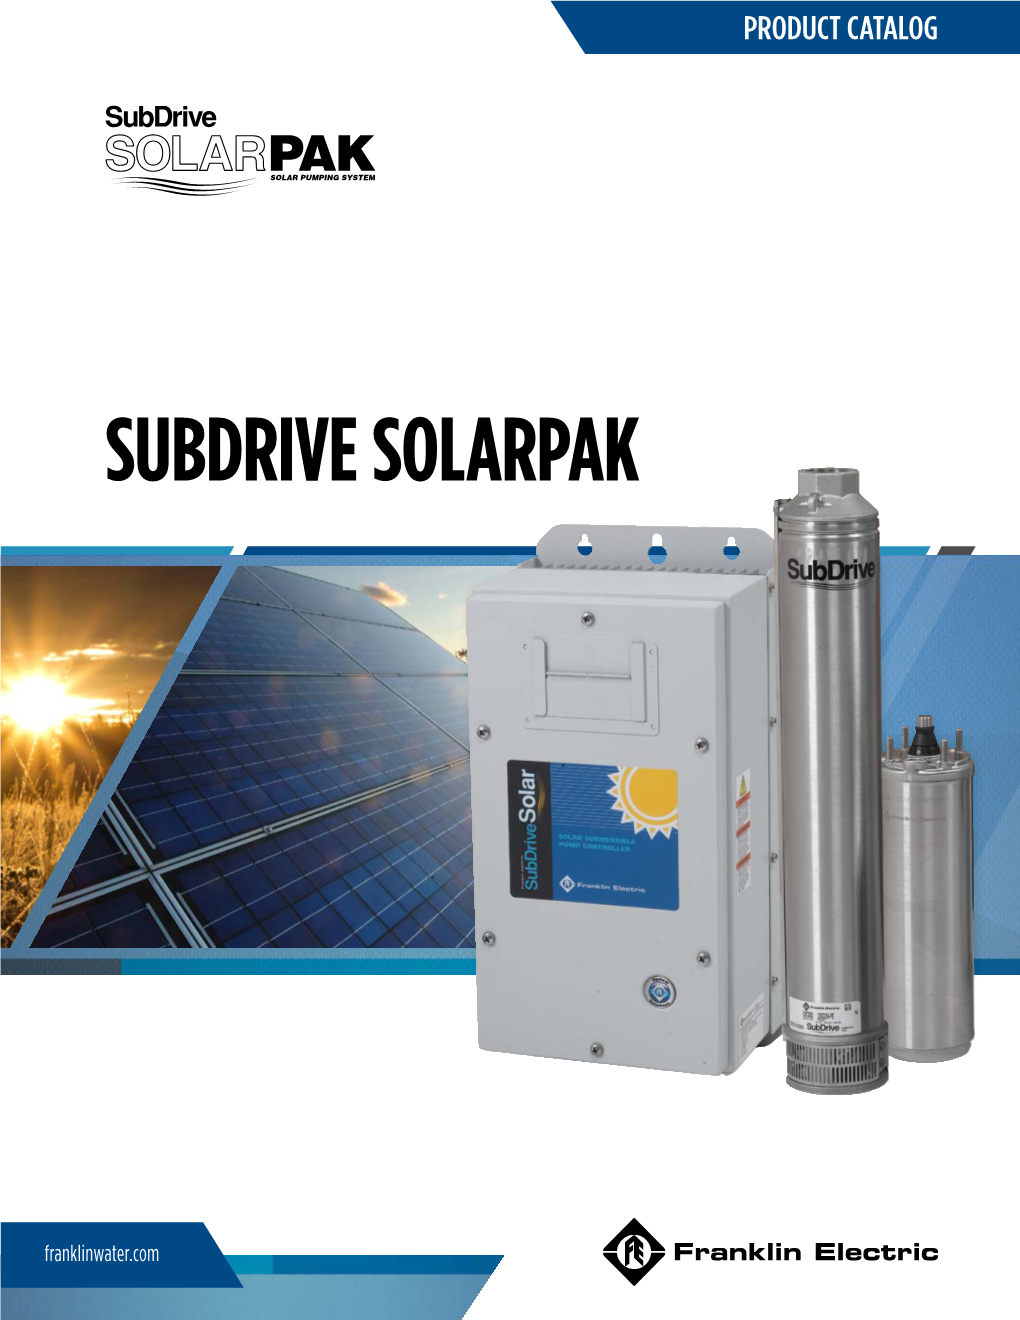 Subdrive Solarpak